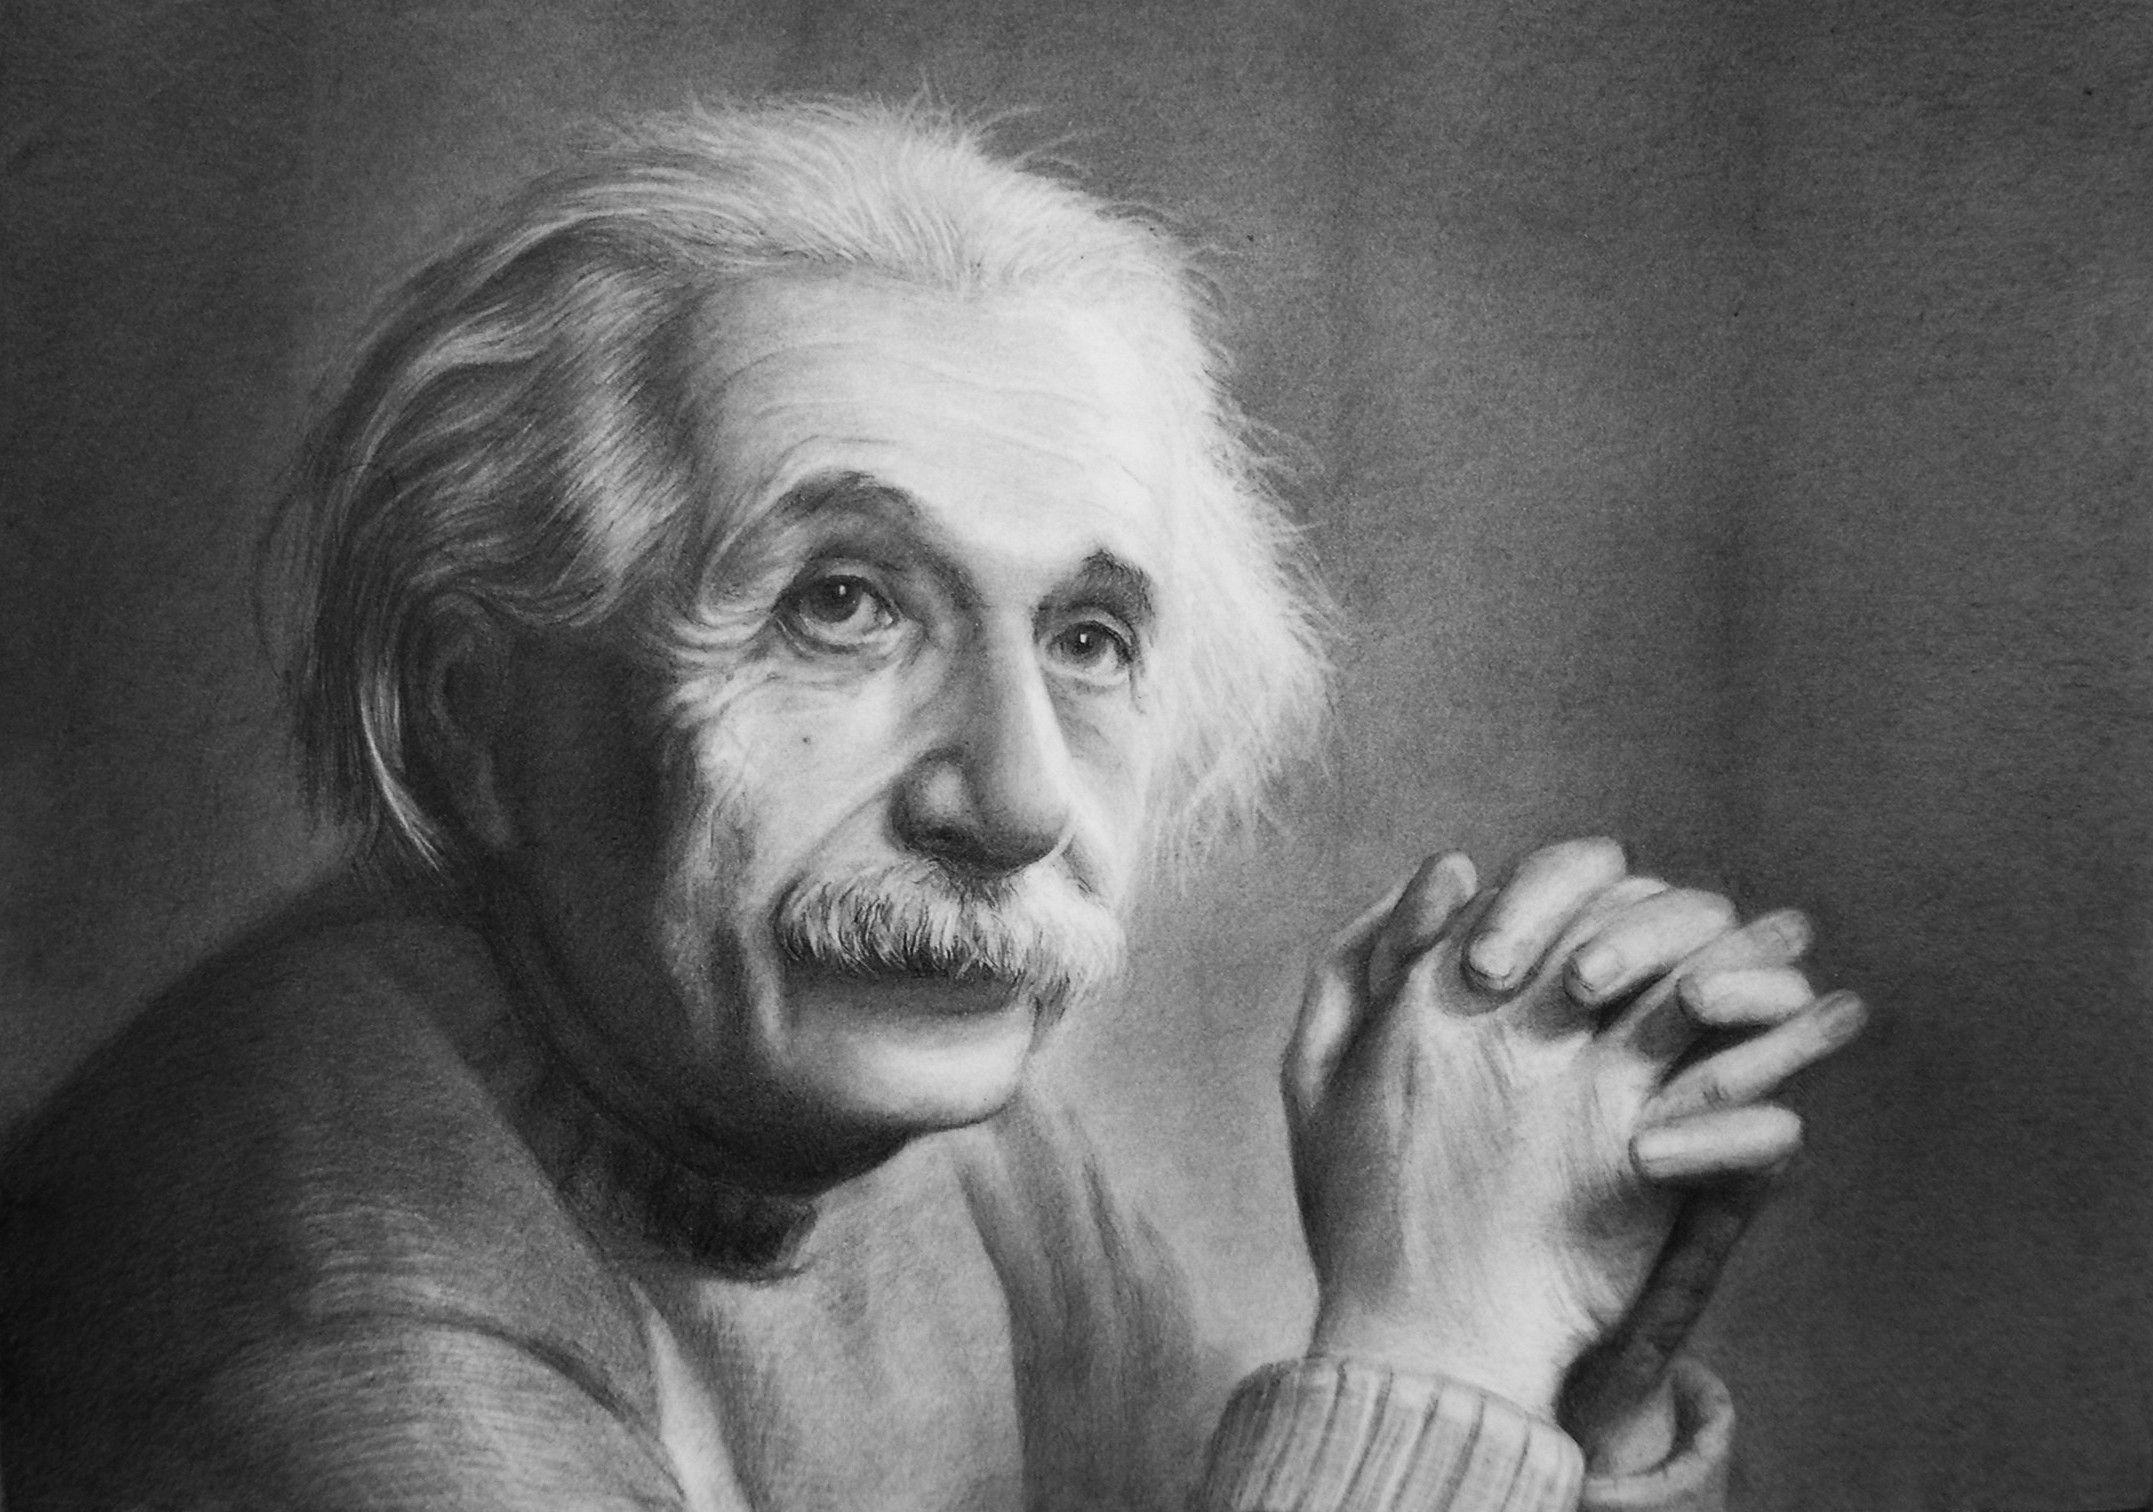 Albert Einstein Wallpaper HD 22525 Image. largepict